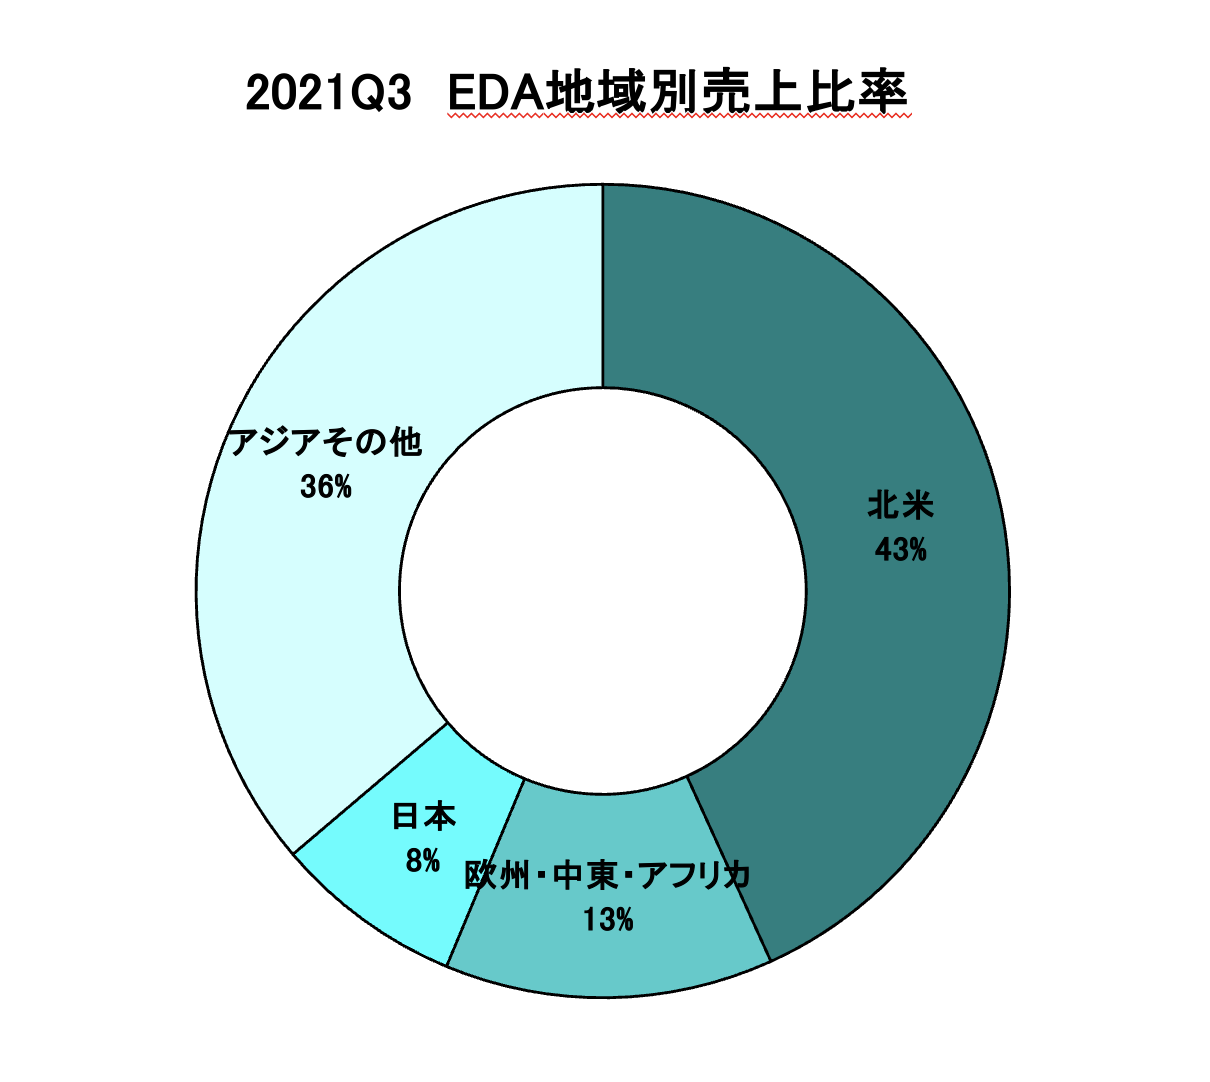 https://www.eda-express.com/%E3%82%B9%E3%82%AF%E3%83%AA%E3%83%BC%E3%83%B3%E3%82%B7%E3%83%A7%E3%83%83%E3%83%88%202022-01-18%2010.29.25.png